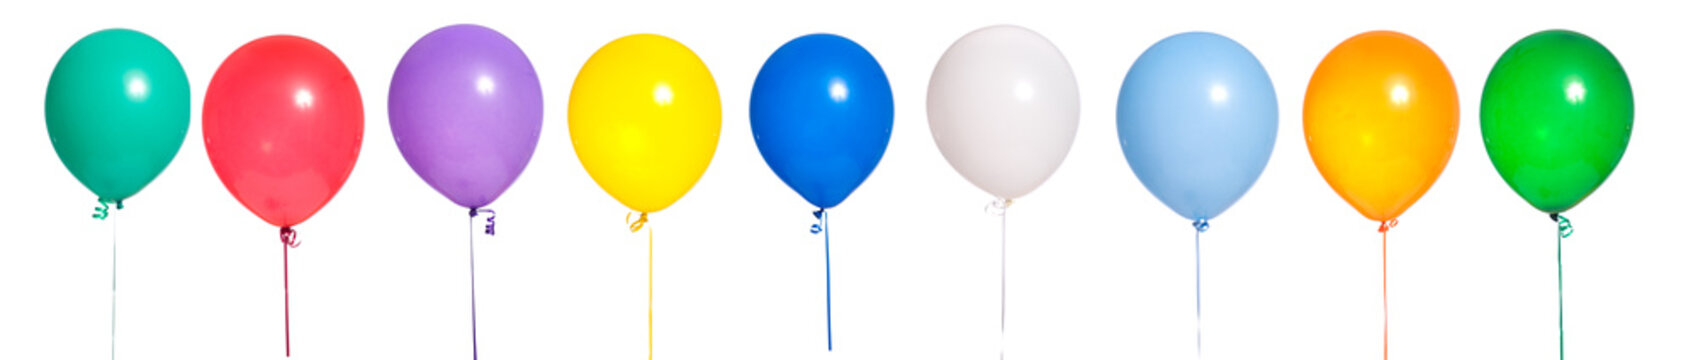 Party Balloons on white